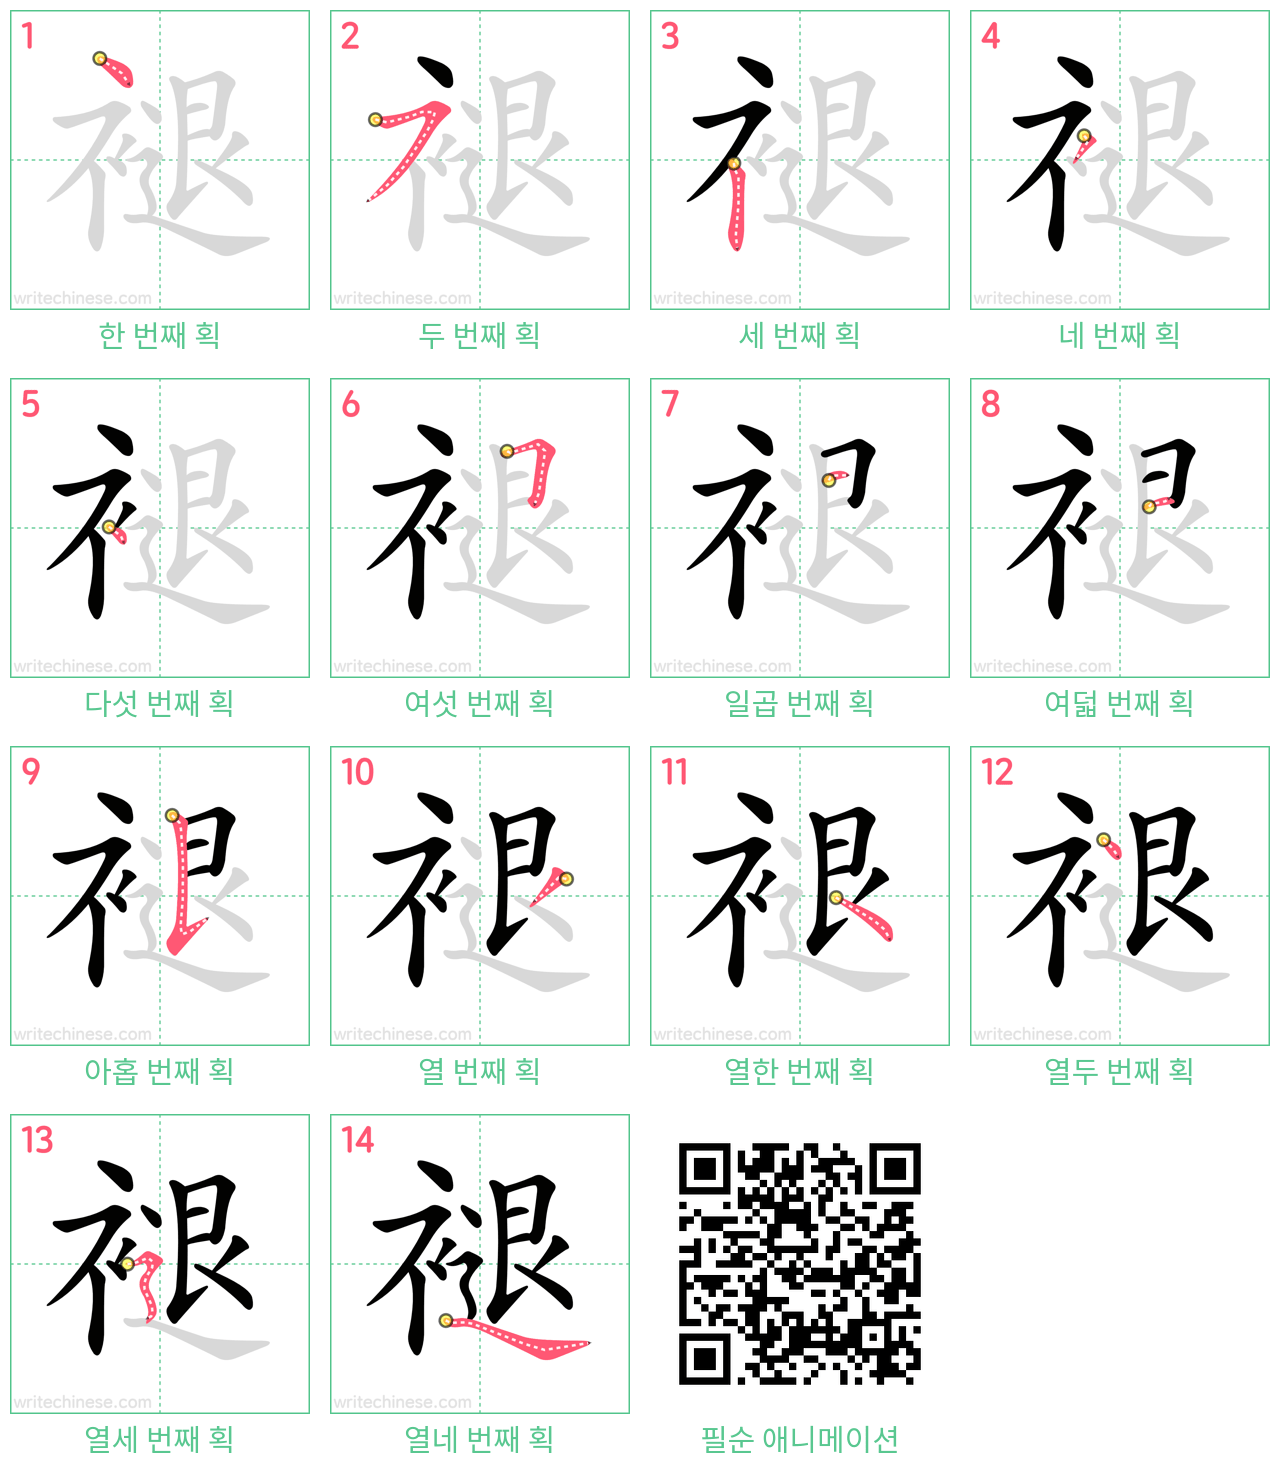 褪 step-by-step stroke order diagrams